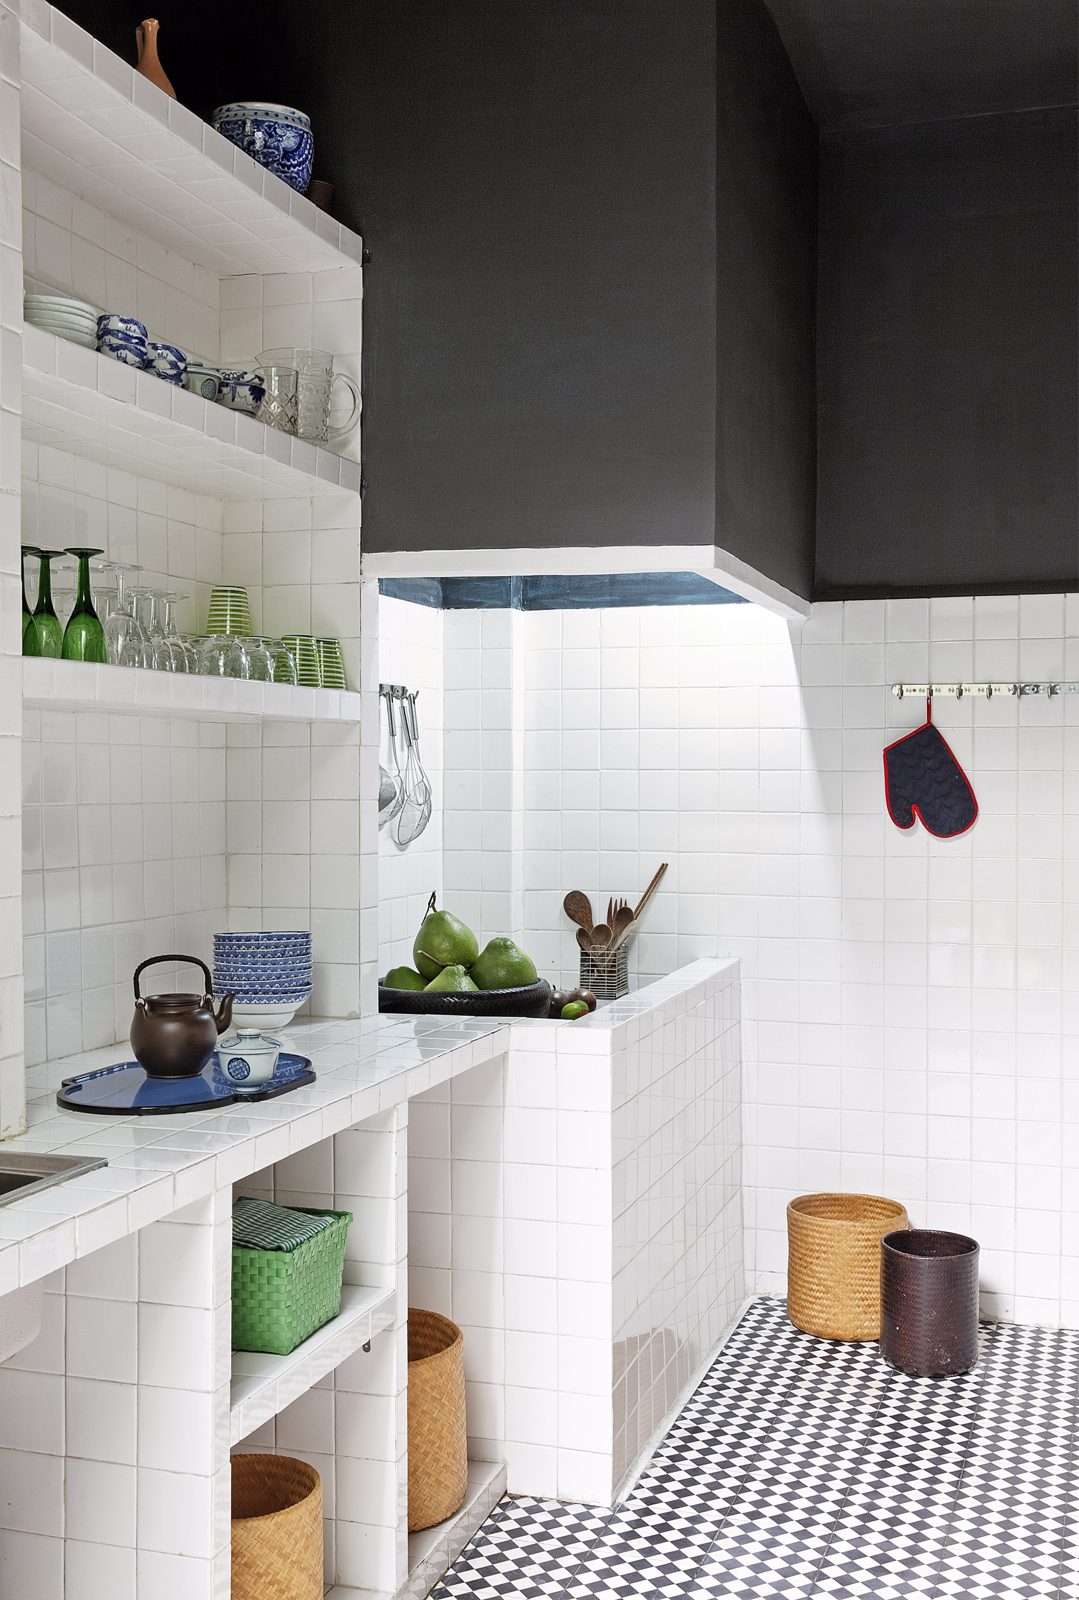 Chủ nhân phòng bếp này ưa thích kiểu gạch tối giản này đến mức sử dụng nó để ốp toàn bộ khu vực tường, kệ lưu trữ, mặt bàn bếp,... giúp không gian 'khiêm tốn' trở nên tươi sáng và rộng rãi hơn so với diện tích thật.